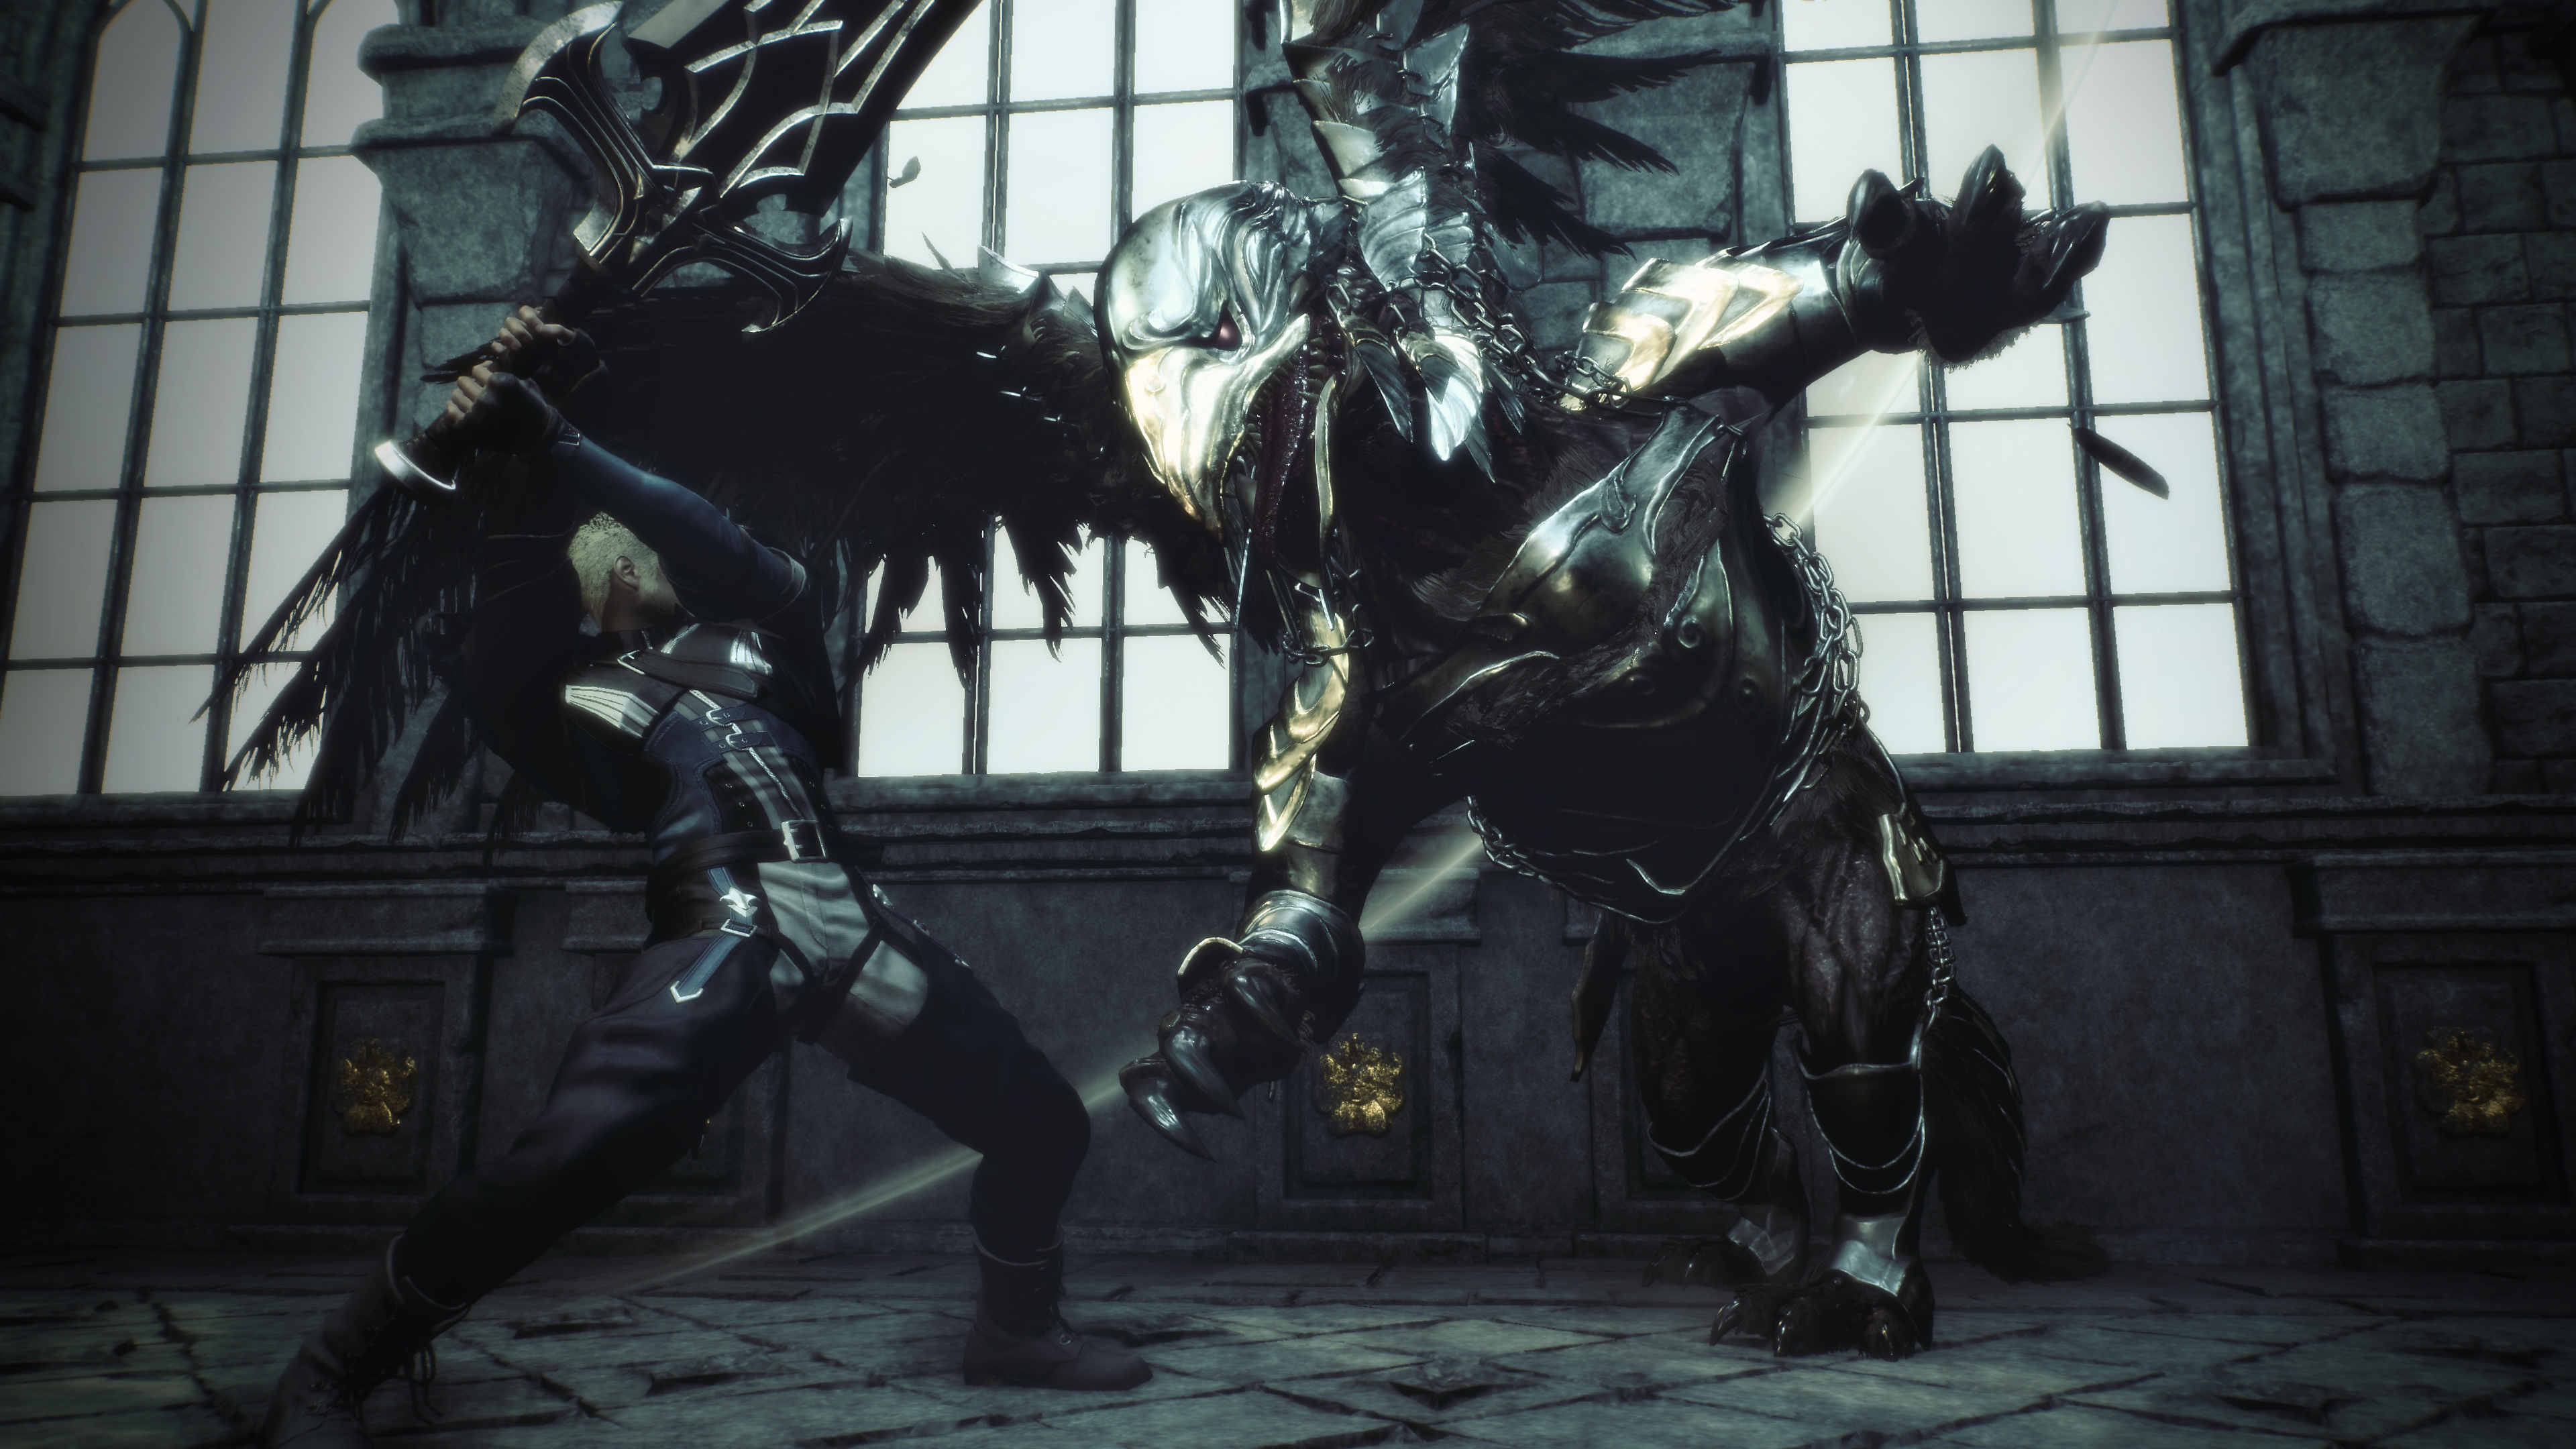 Stranger of Paradise Final Fantasy Origin – снимок экрана, на котором главный герой Джек сражается с бронированным существом, похожим на грифона